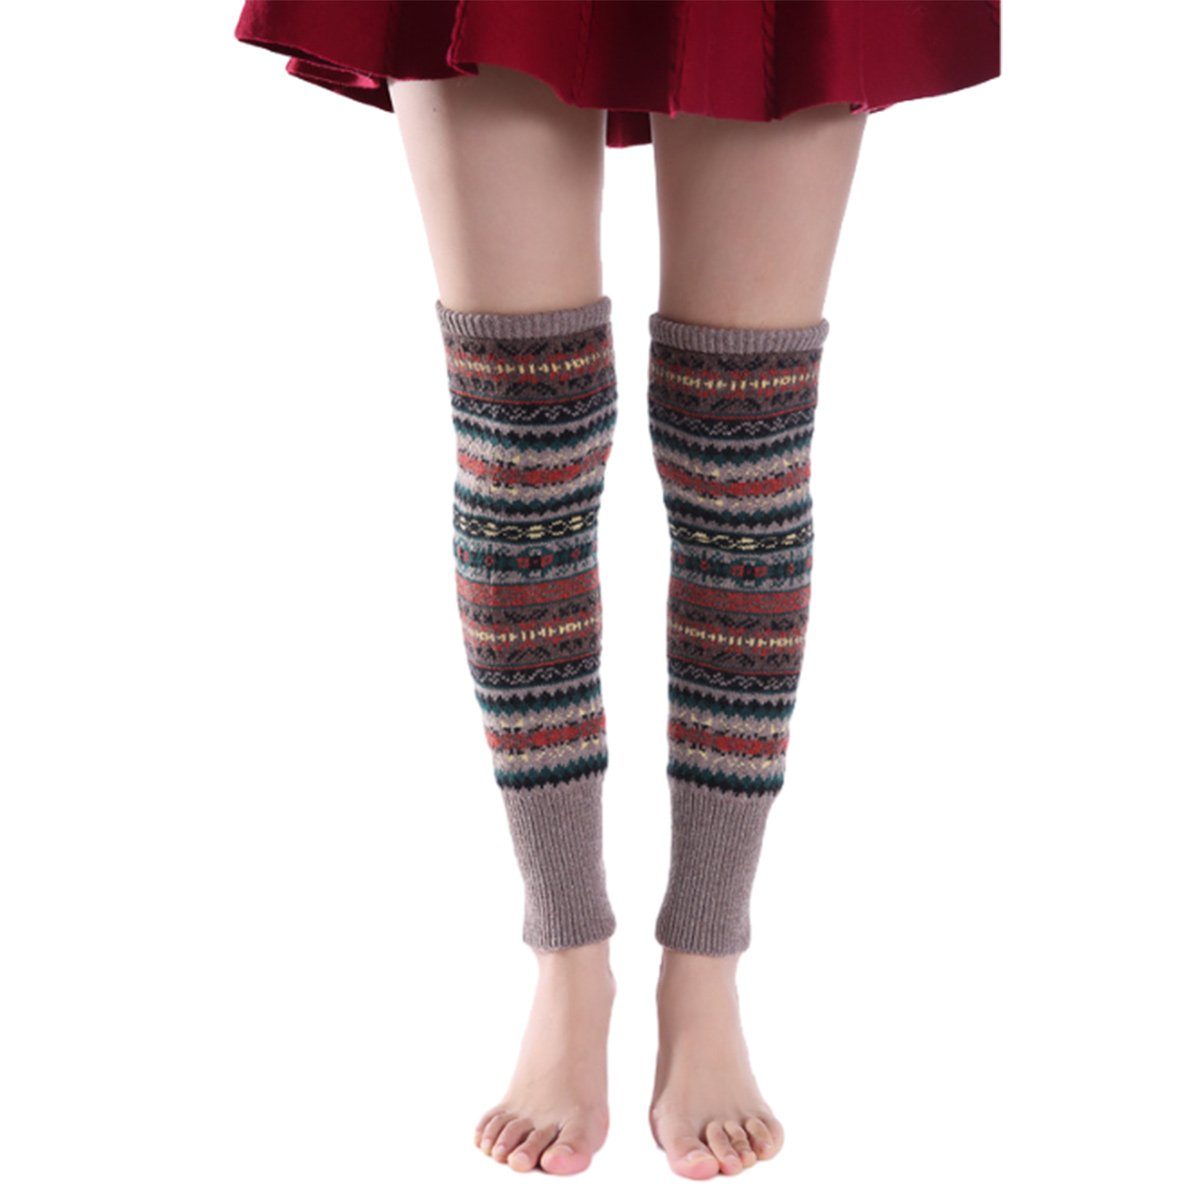 Jormftte Beinstulpen Damen Lange Winter Legwarmer Böhmischer Stil,Knit Socken,für Weihnacht khaki